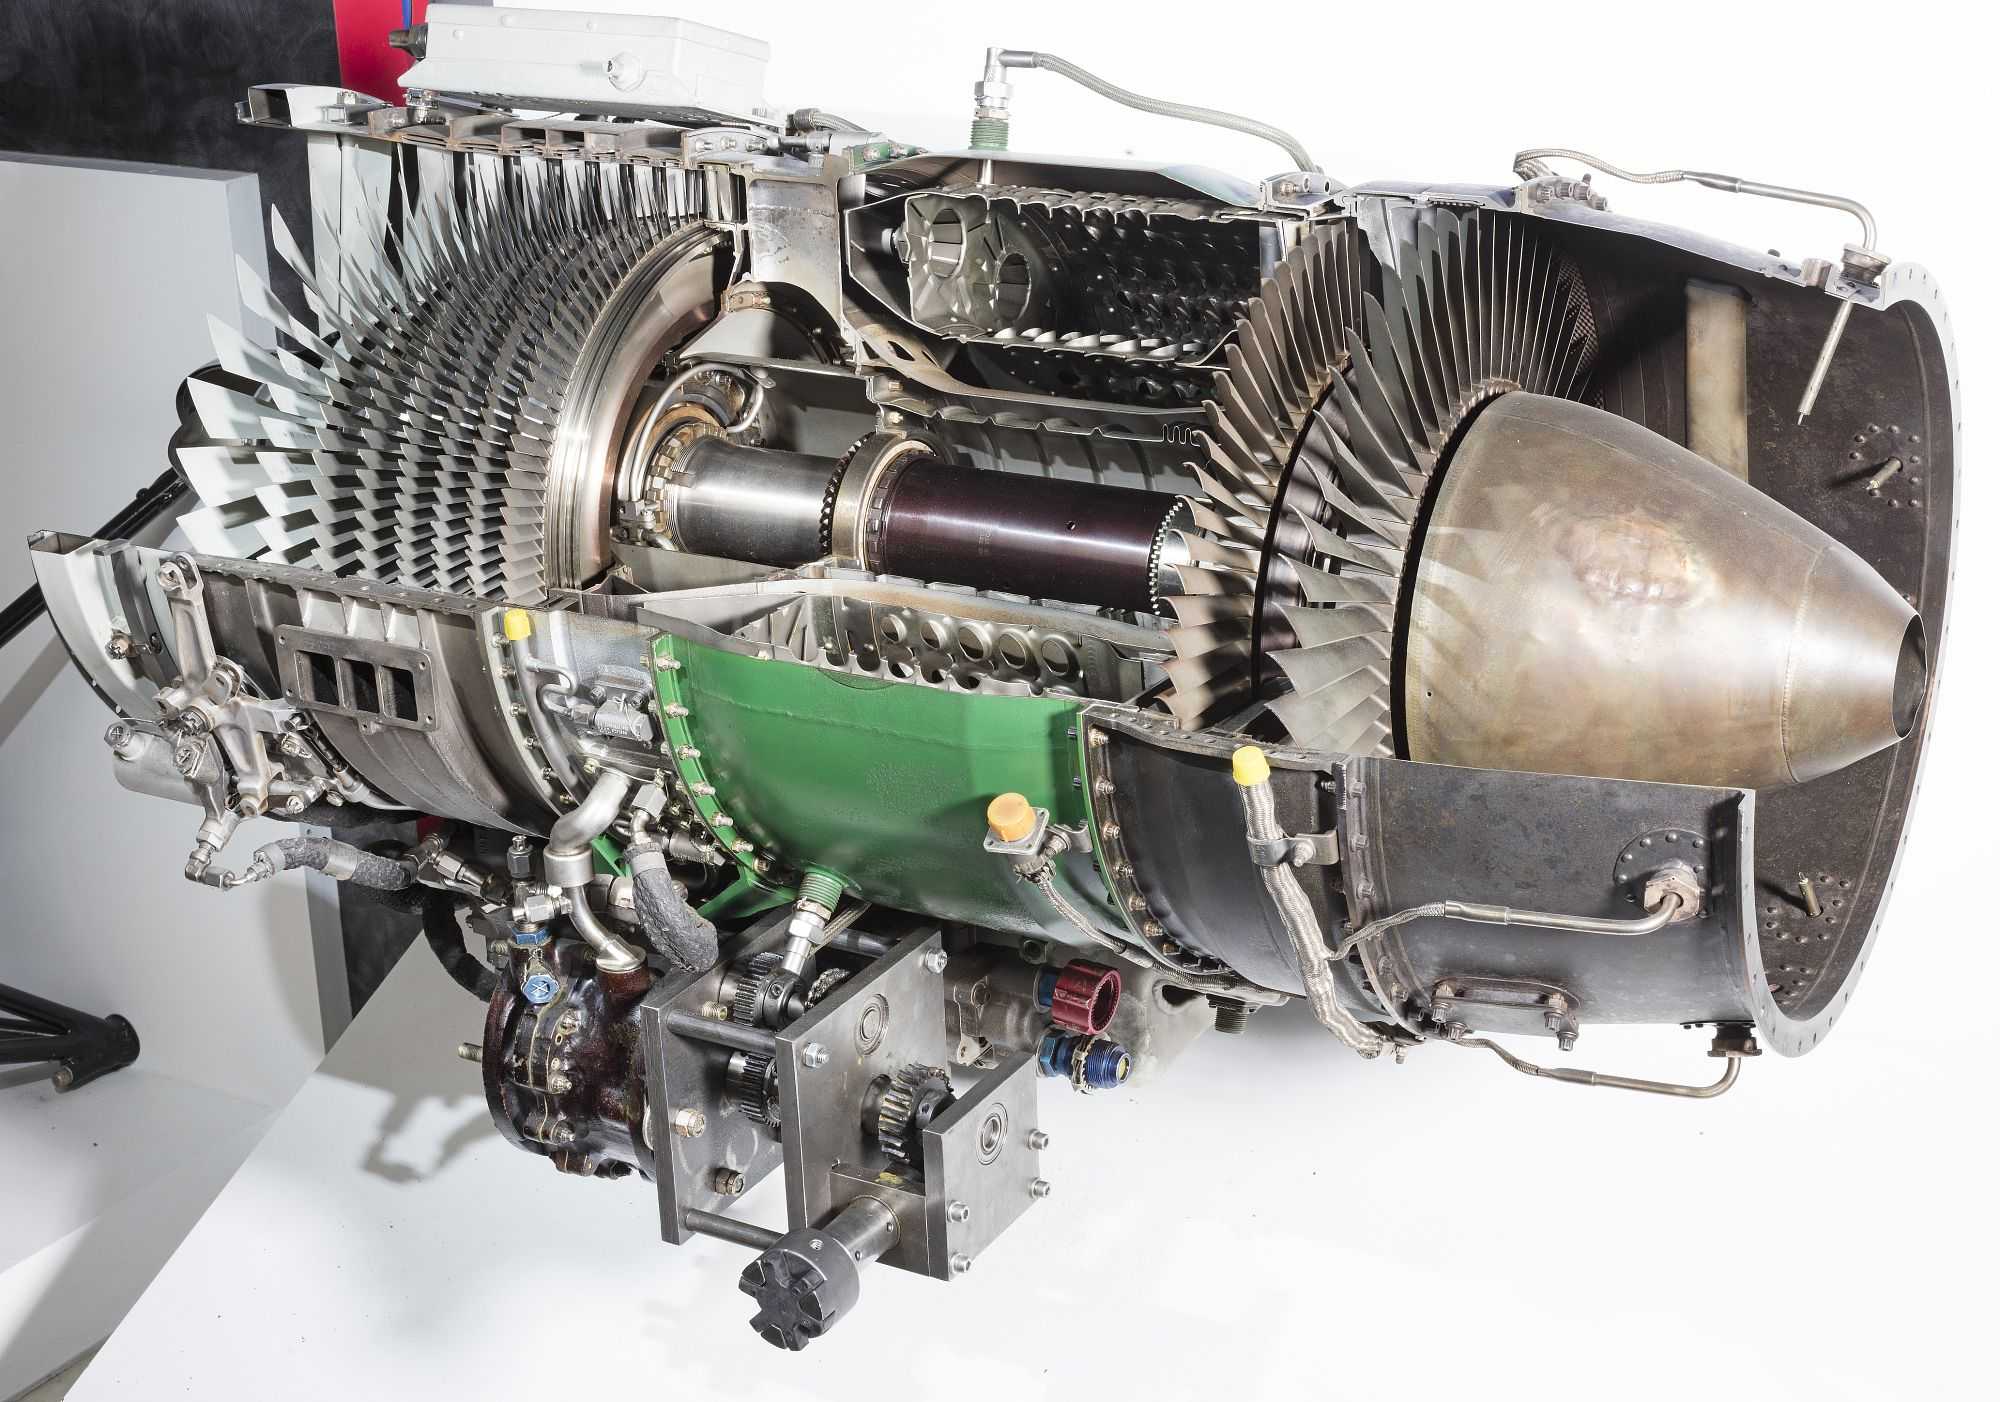 Двигатель с турбонаддувом. плюсы и минусы турбированных двигателей.